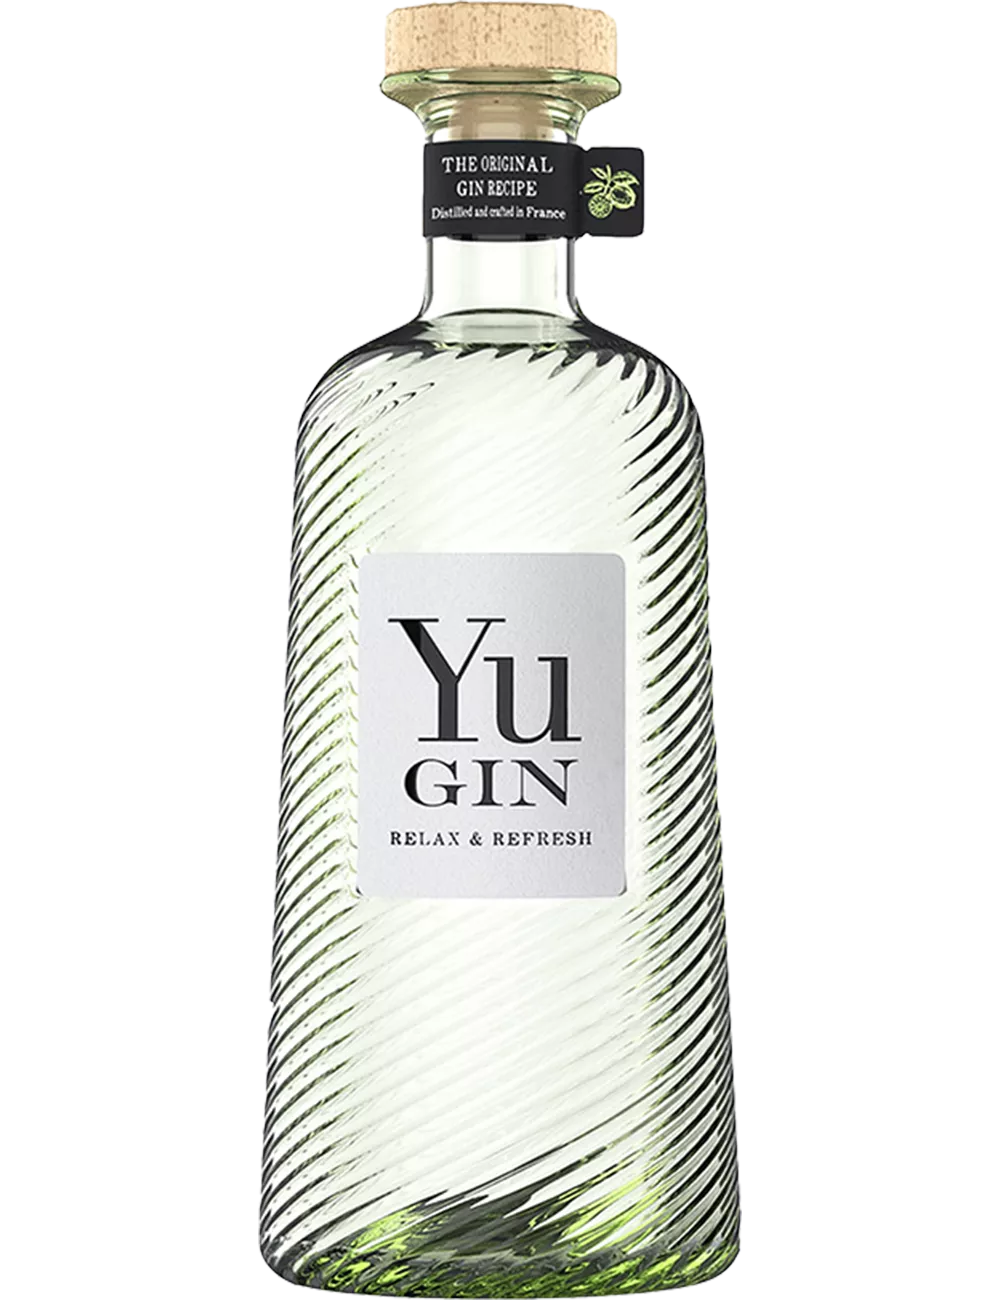 Yu - Distilled gin